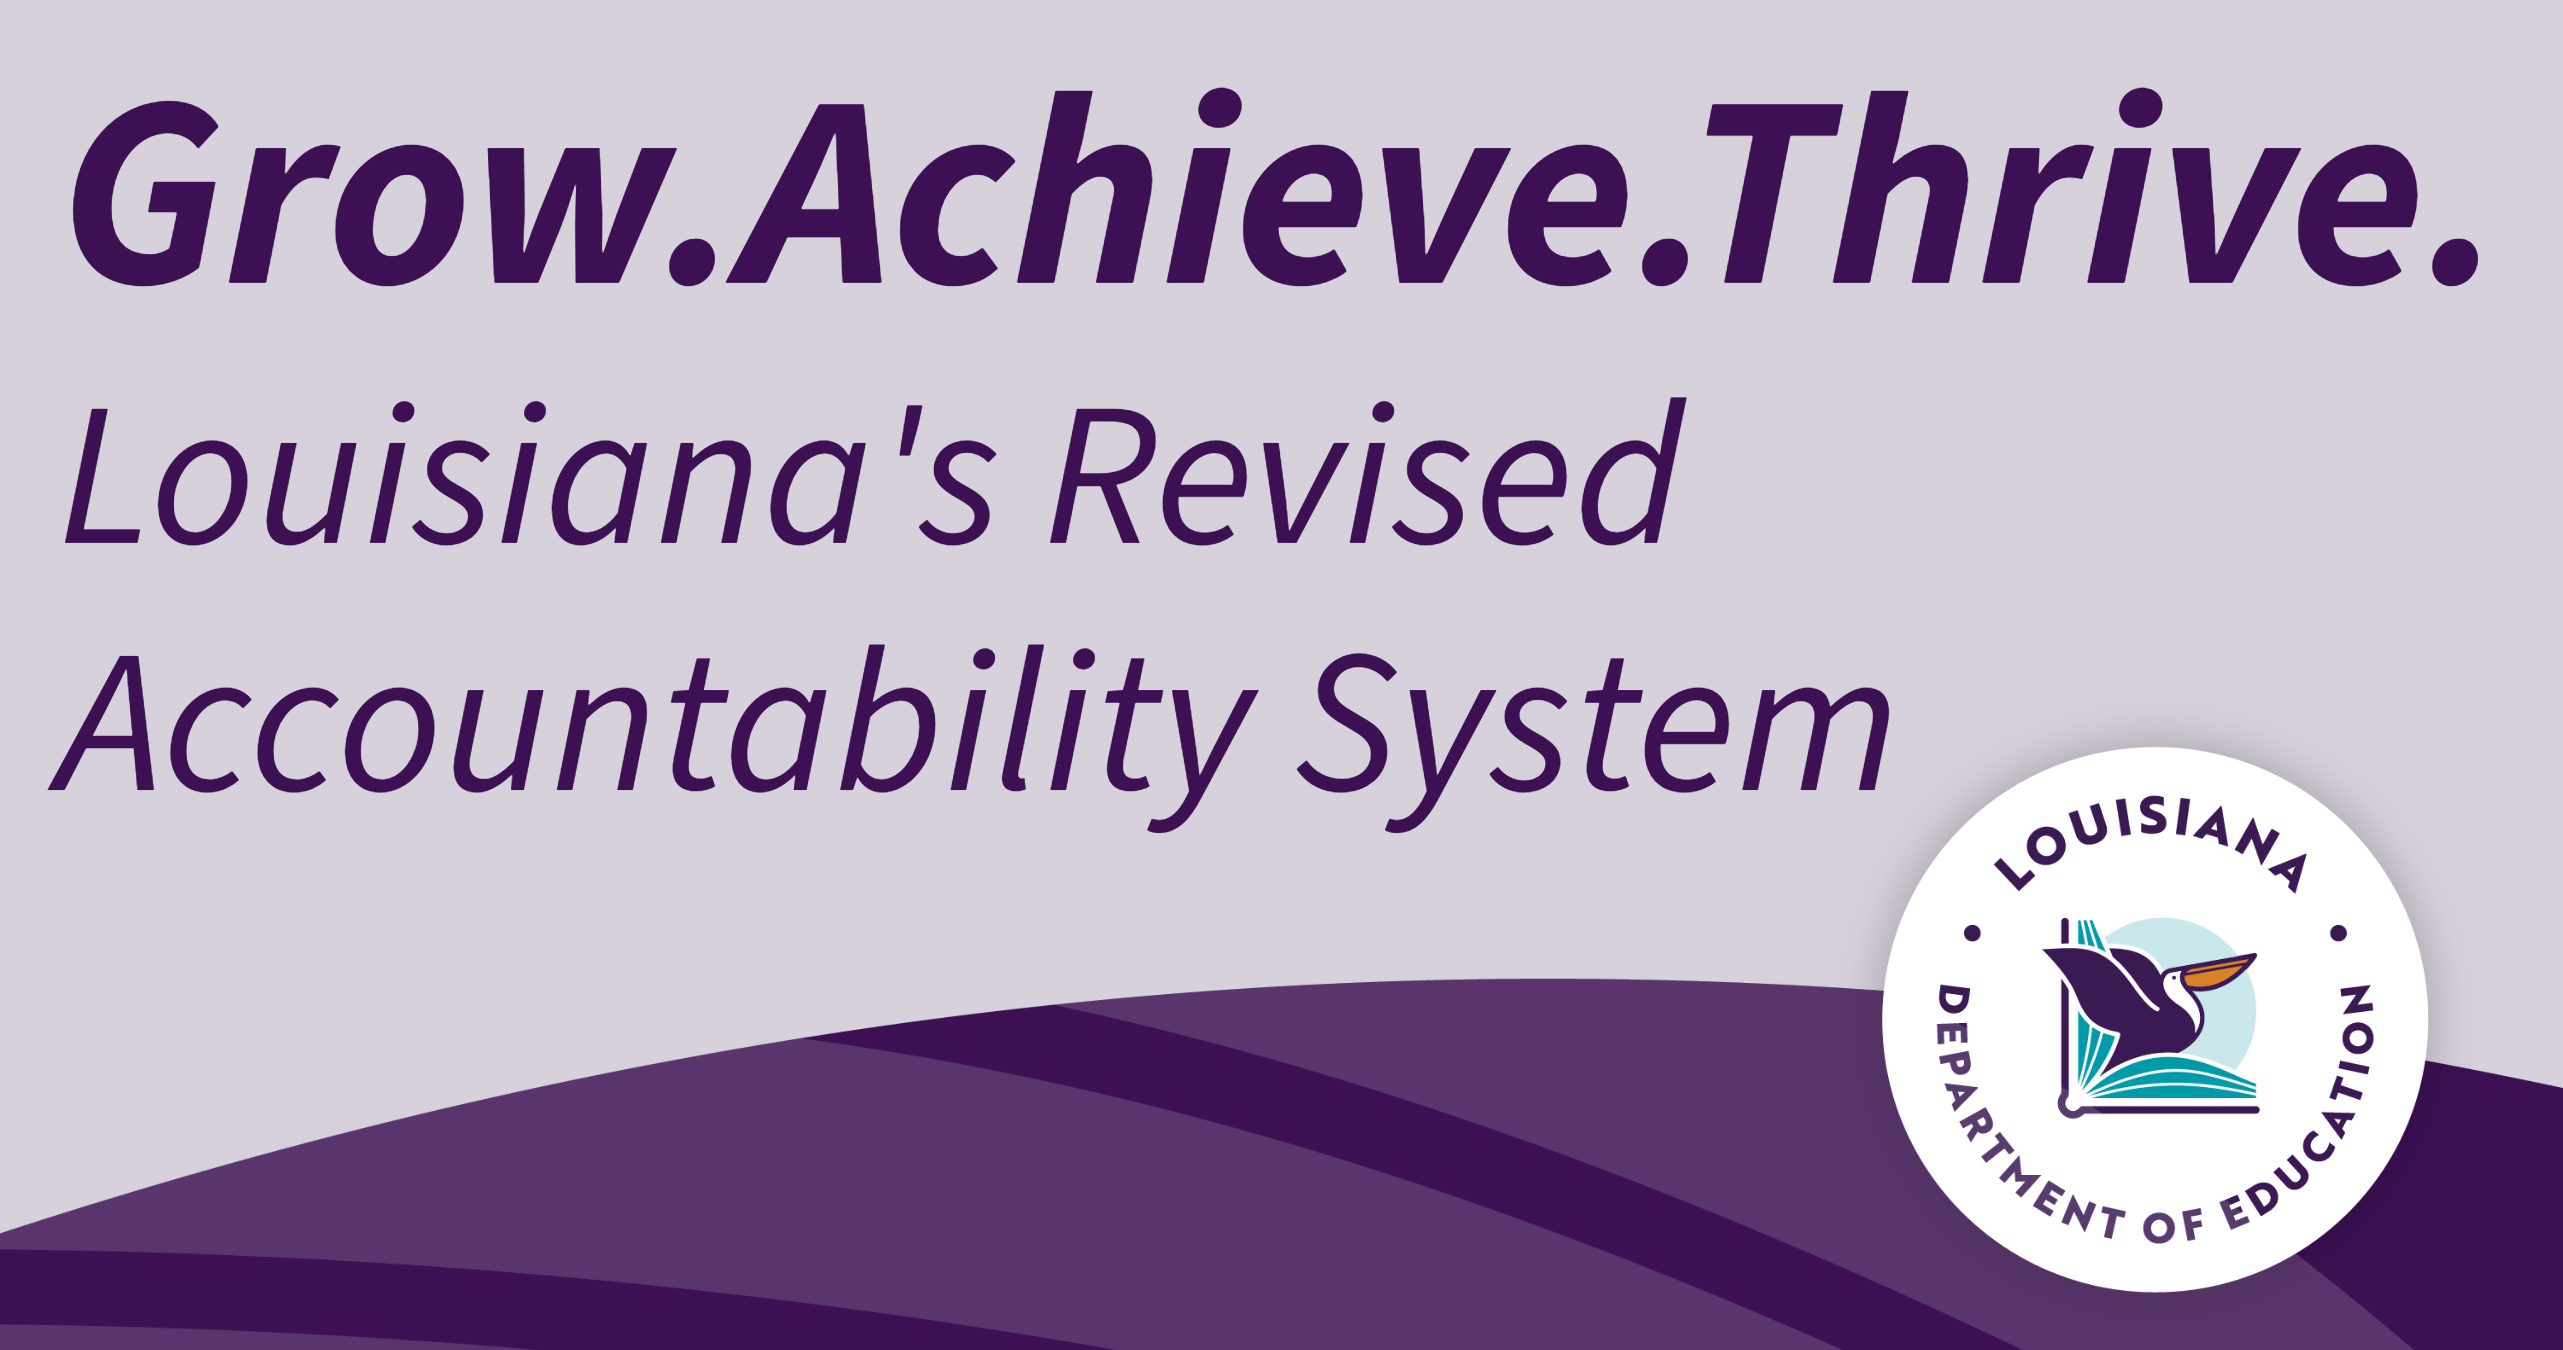 Louisiana's revised accountability system